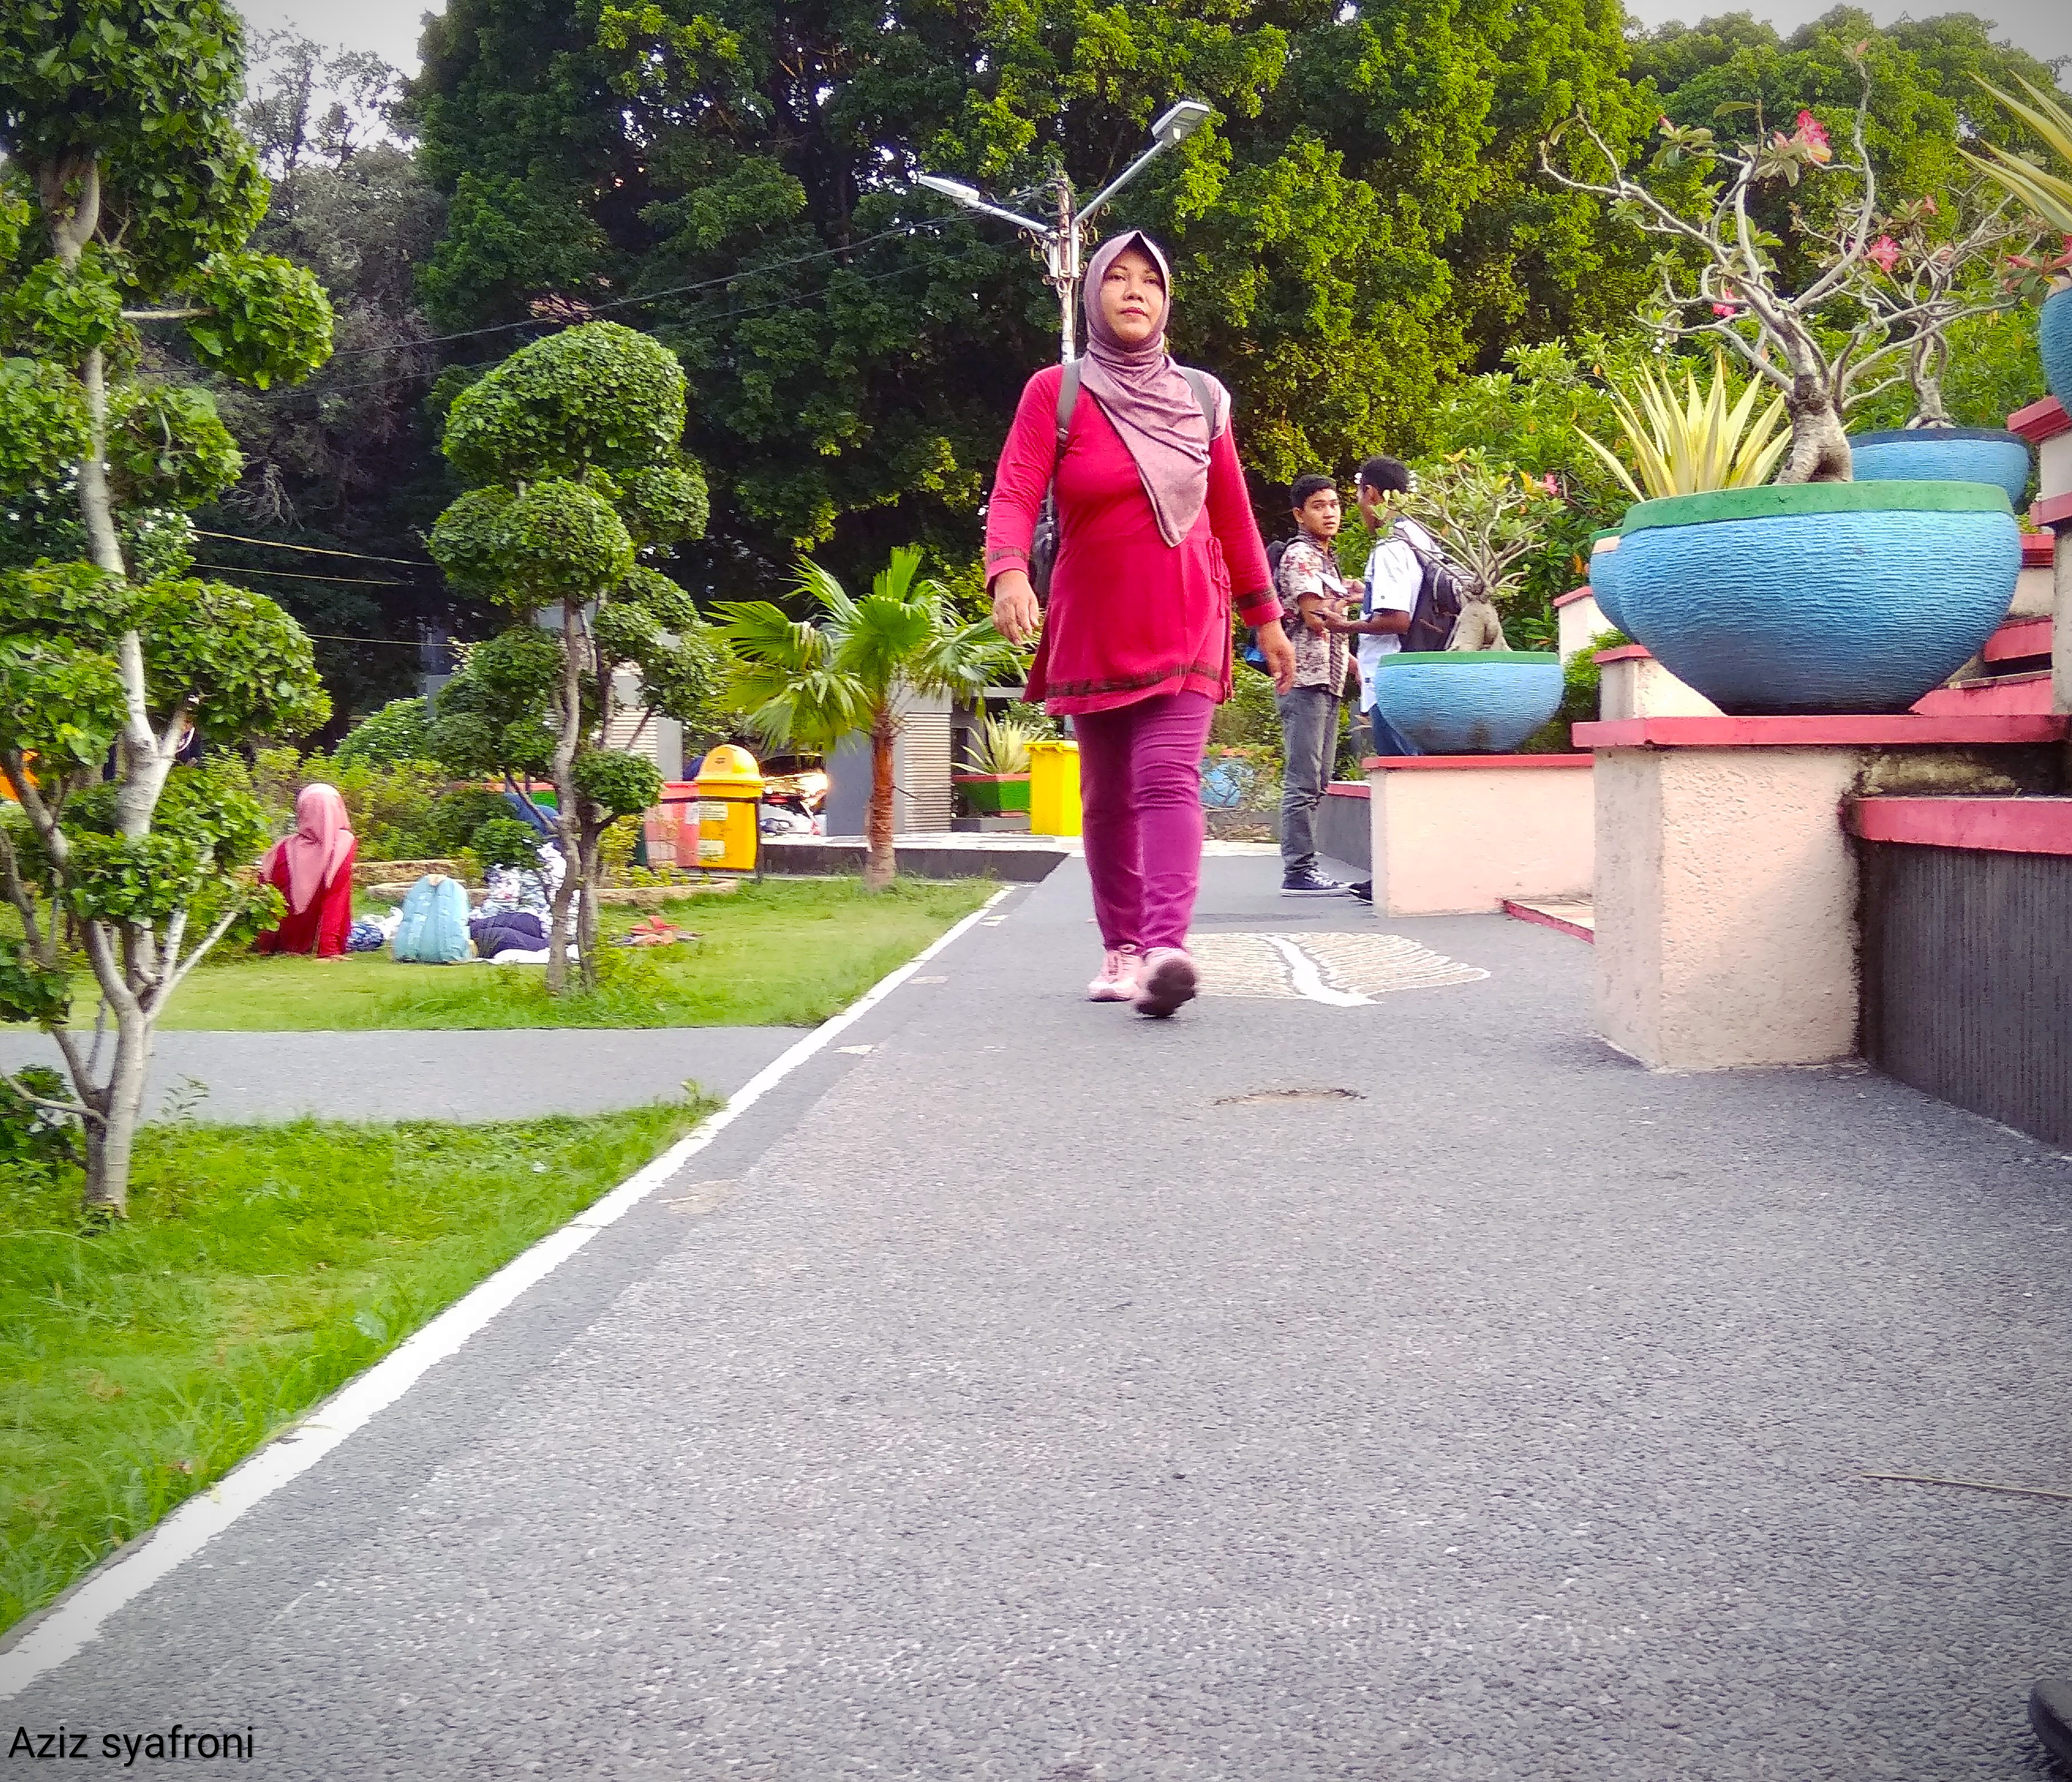 Taman sangkareang memiliki tempat berolahraga seperti salah seorang  ibu" sedang berolahraga di taman sangkareang (foto dokumentasi pribadi )